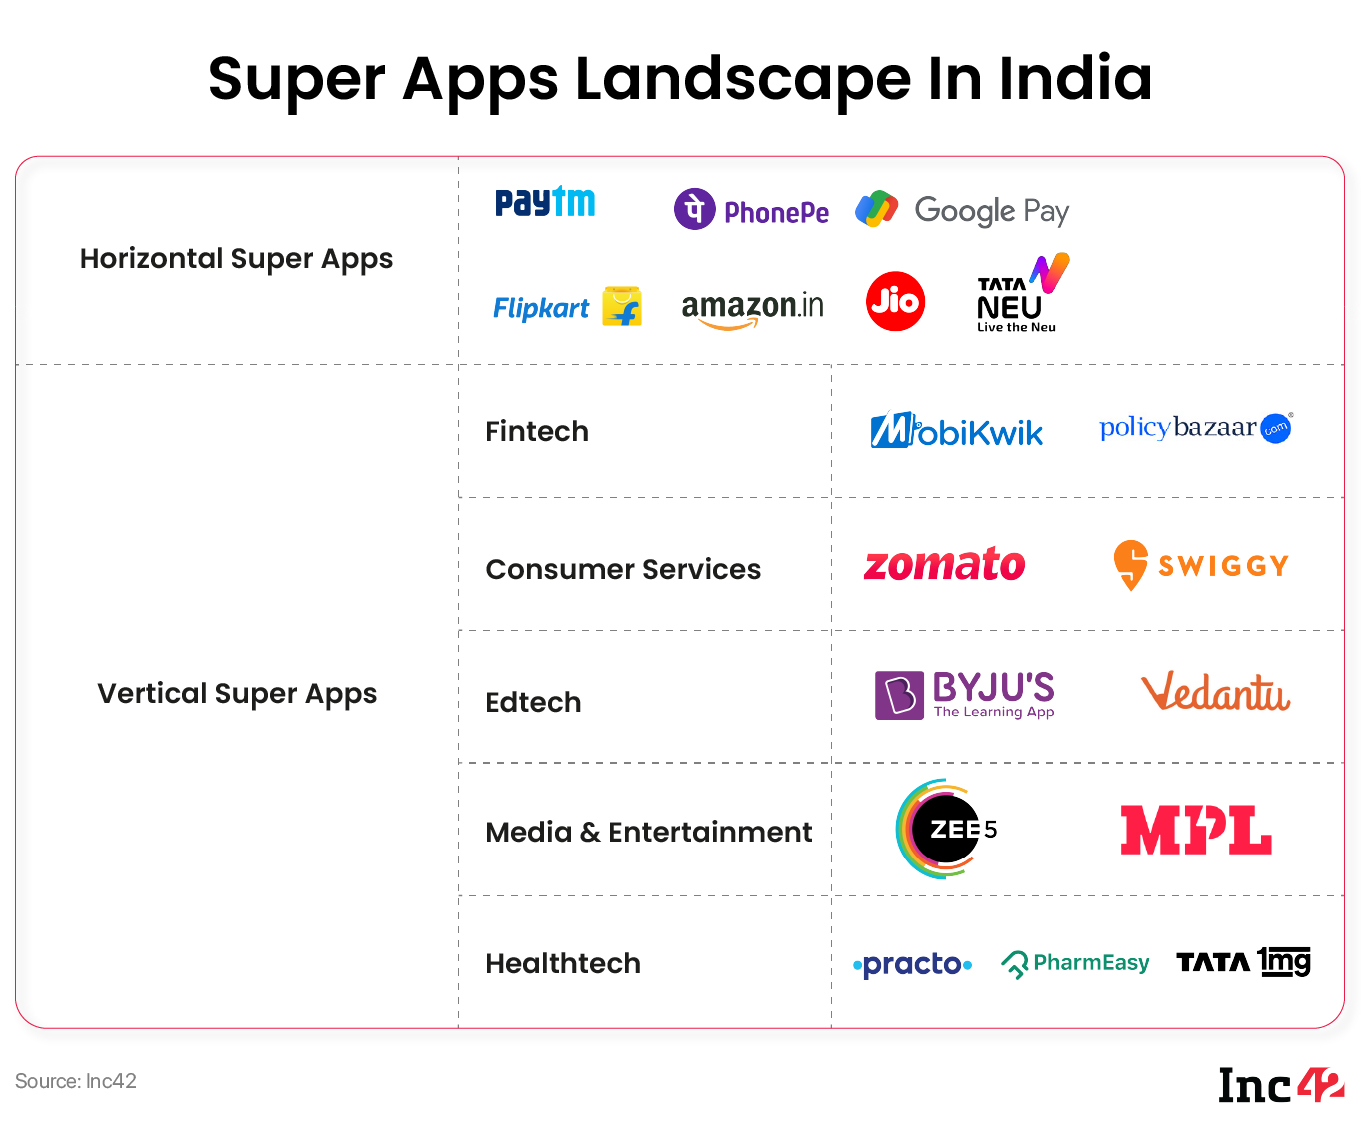 Super Apps Landscape